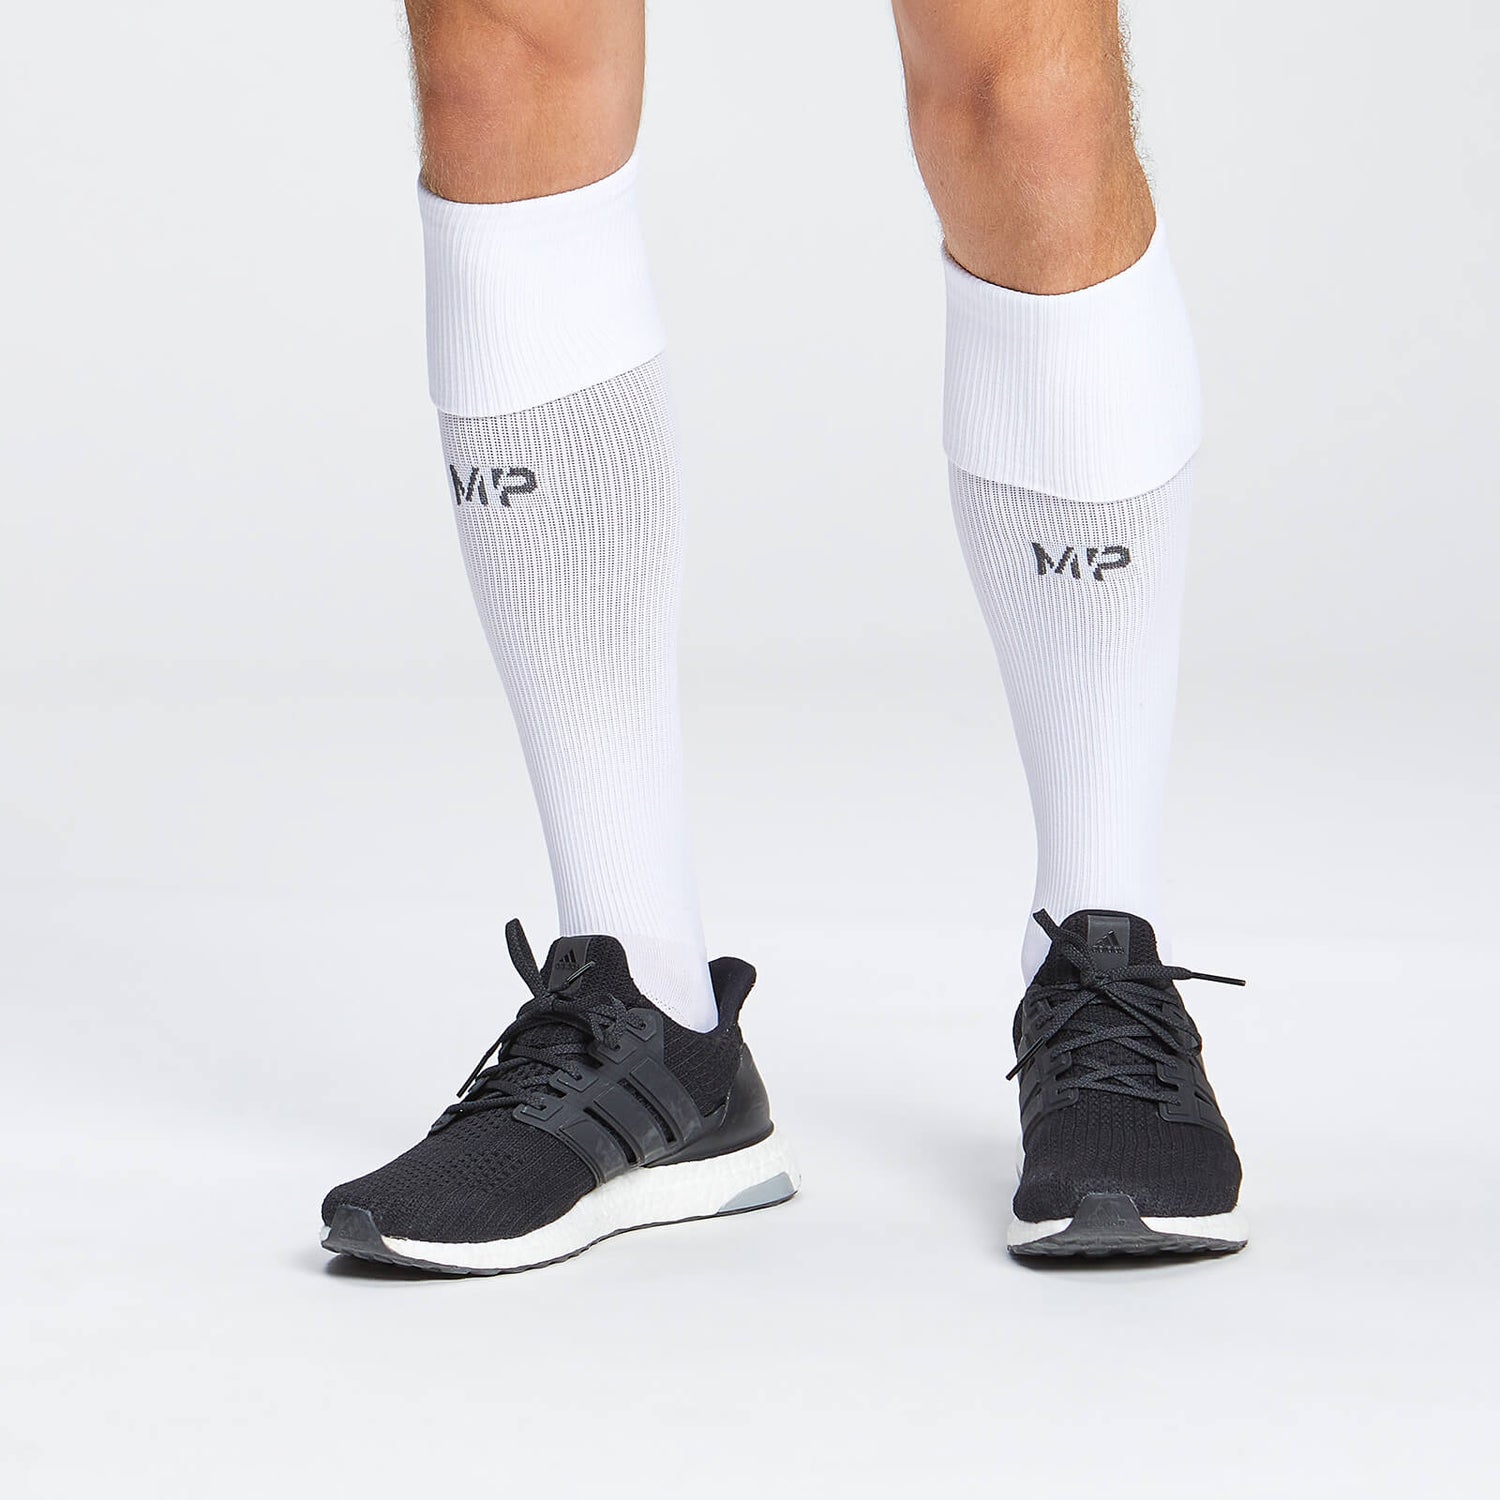 Μακριές Κάλτσες Ποδοσφαίρου MP - Λευκές - UK 3-6